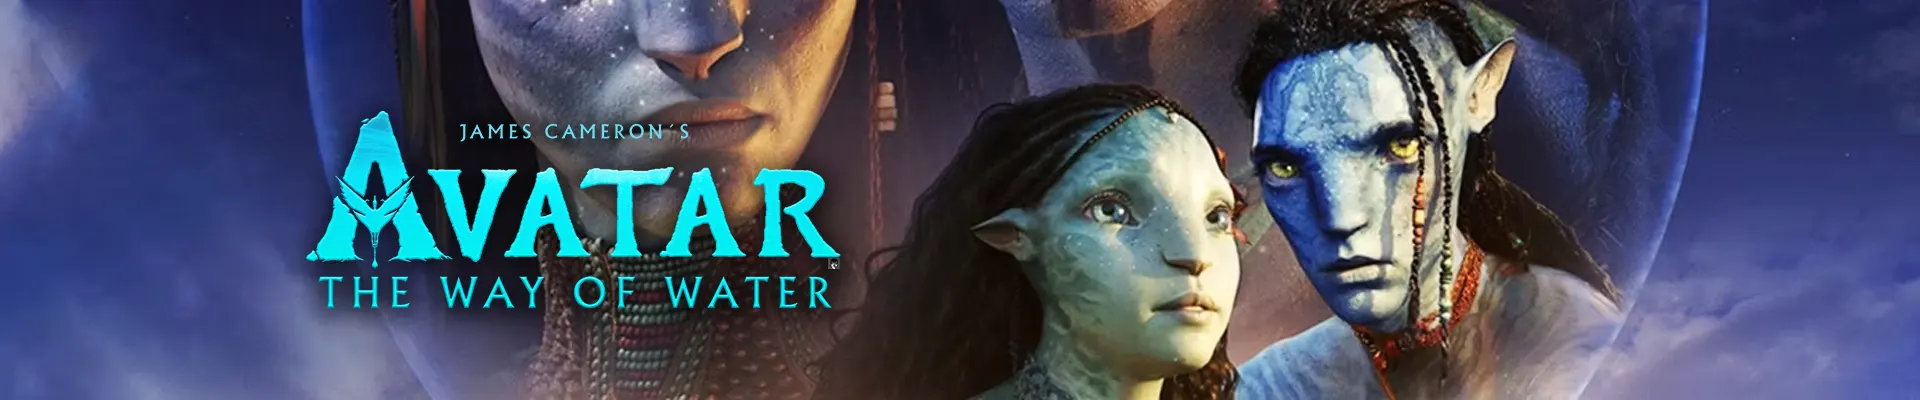 Avatar 2 : The Way of Water (2022) อวตาร 2 : วิถีแห่งสายน้ำ